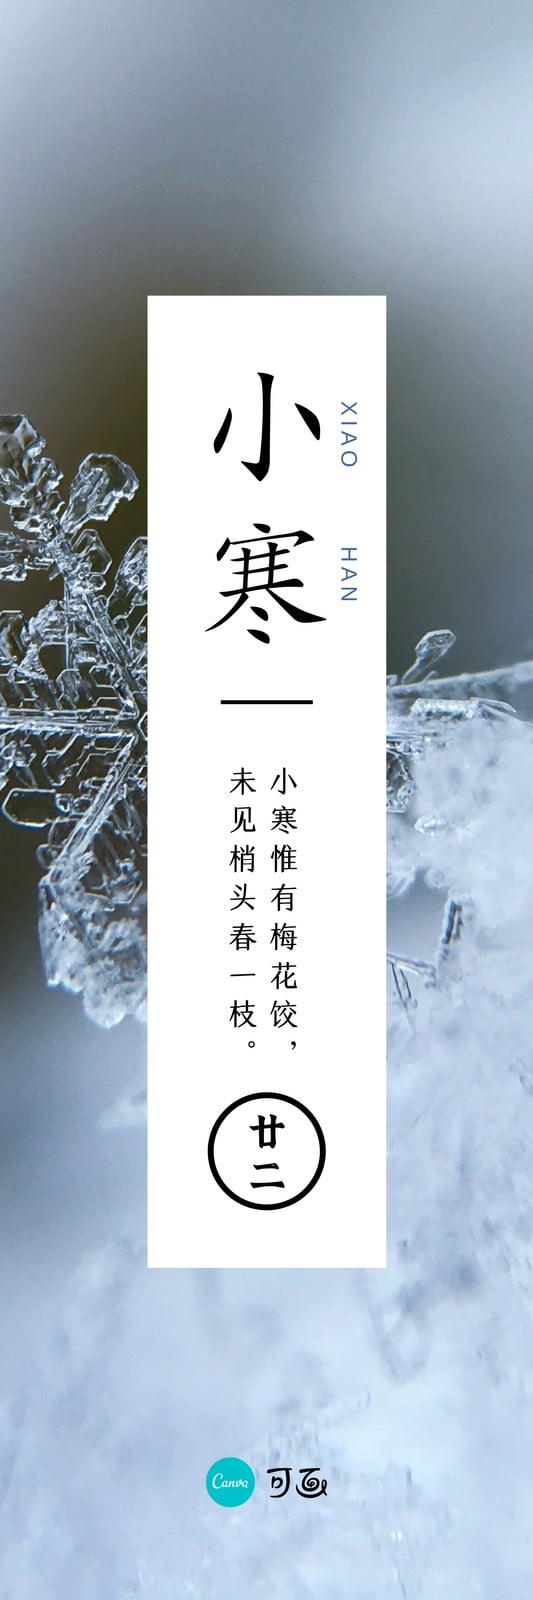 蓝色雪花小寒节气照片中文书签